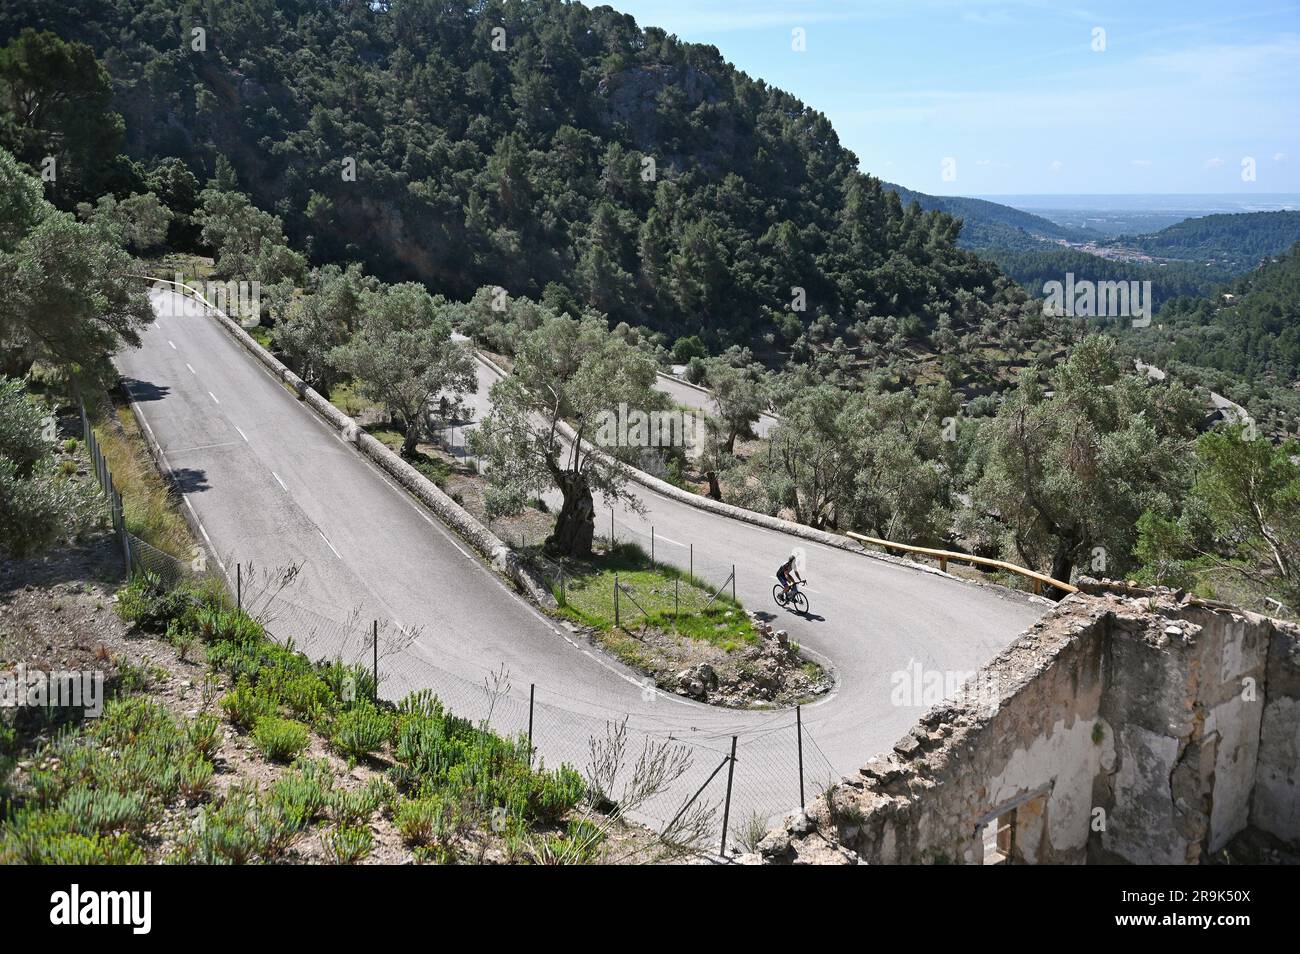 Cycliste sur le Coll de Soller dans les montagnes Tramuntana, Majorque, Espagne Banque D'Images